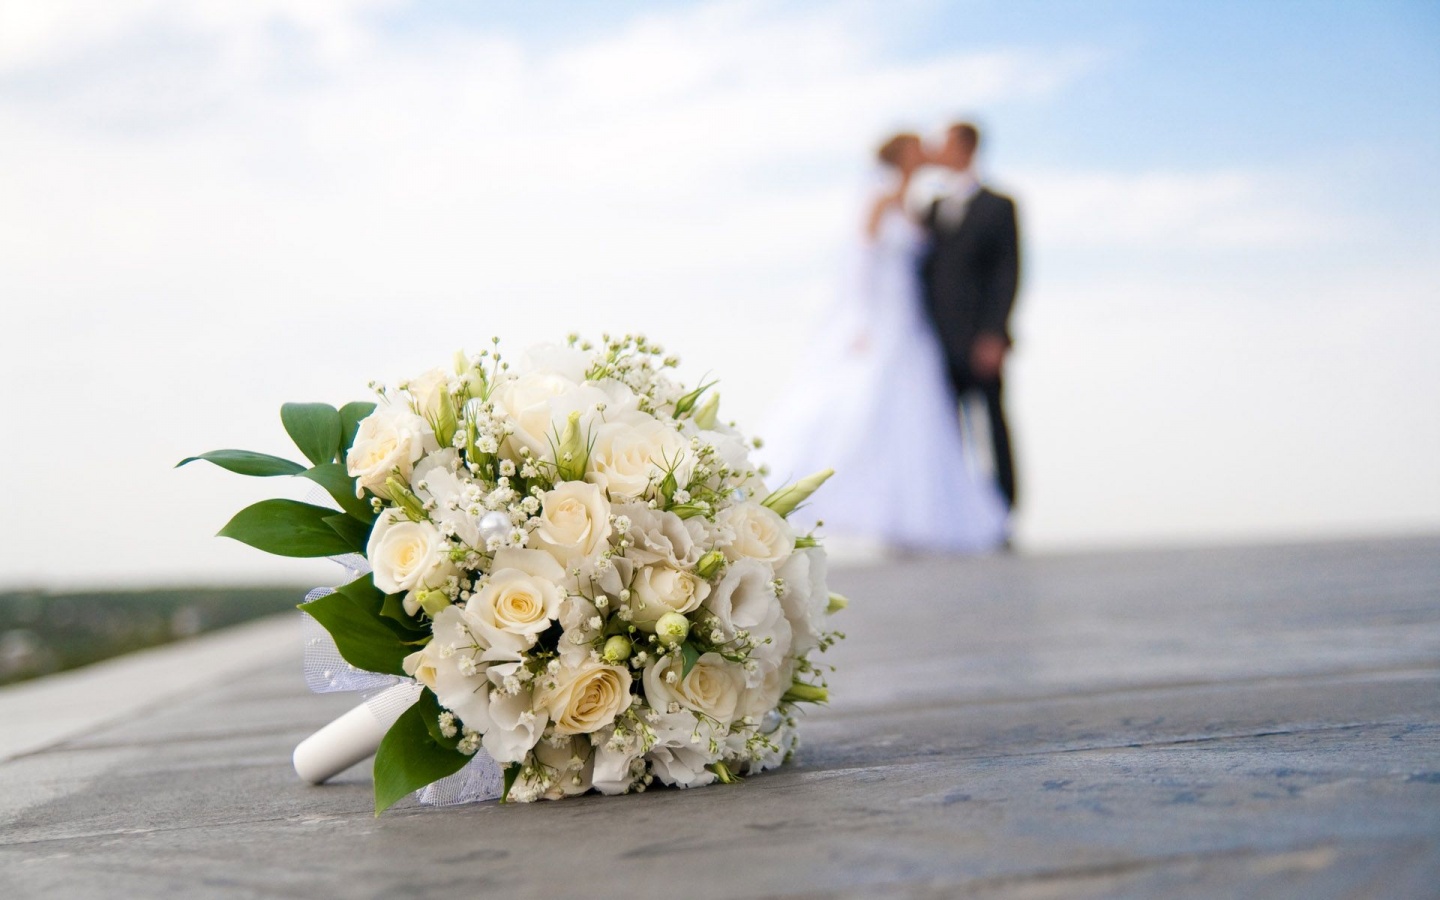 Γάμος: 5 πολύ πρακτικοί λόγοι για να μην παντρευτείς